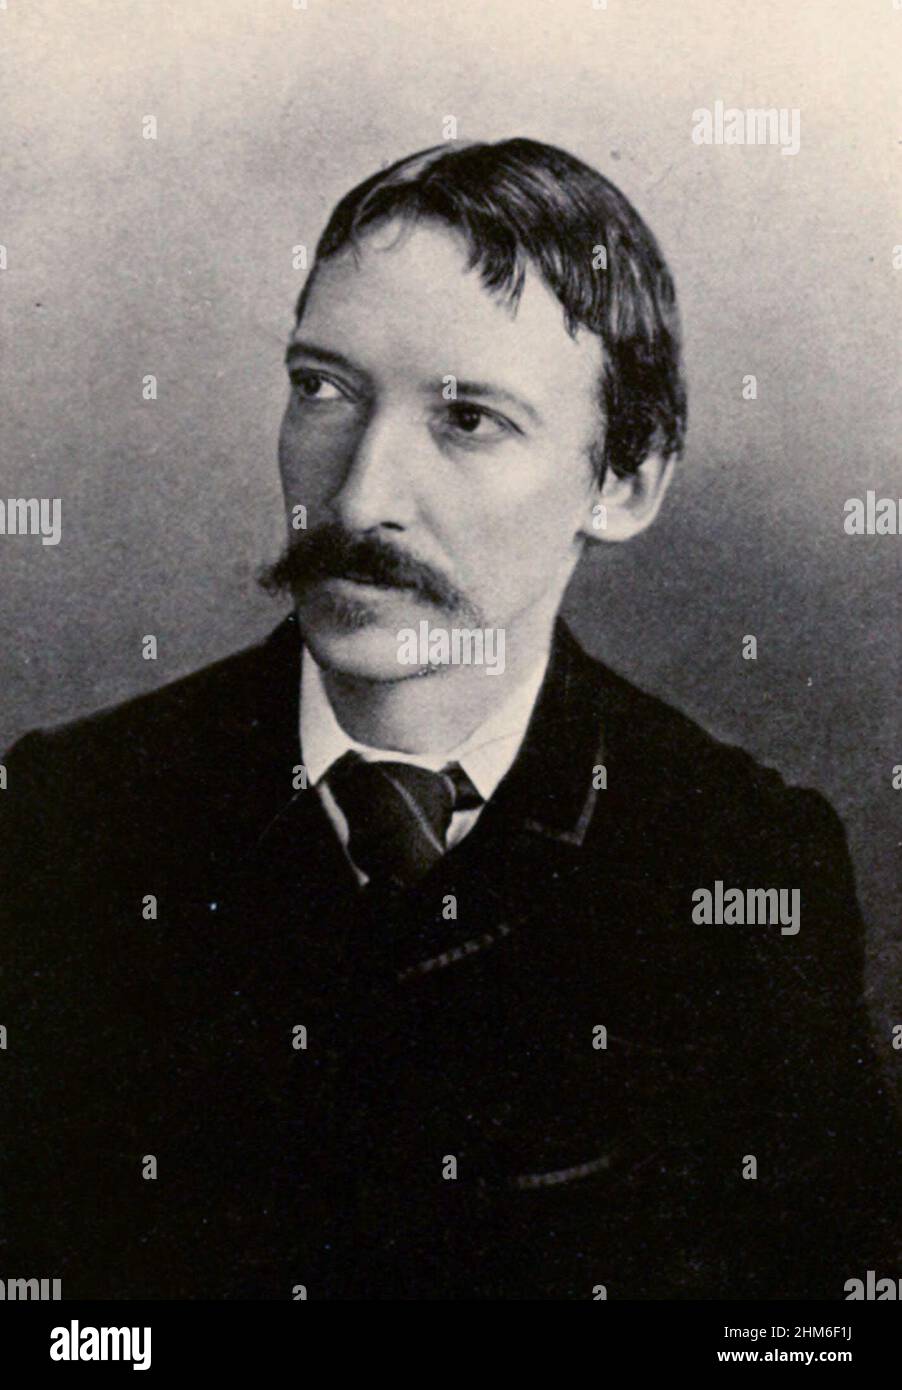 Ritratto dello scrittore scozzese Robert Louis Stevenson, autore di Treasure Island e della freccia Nera, del 1893. Ha 43 anni. Foto Stock